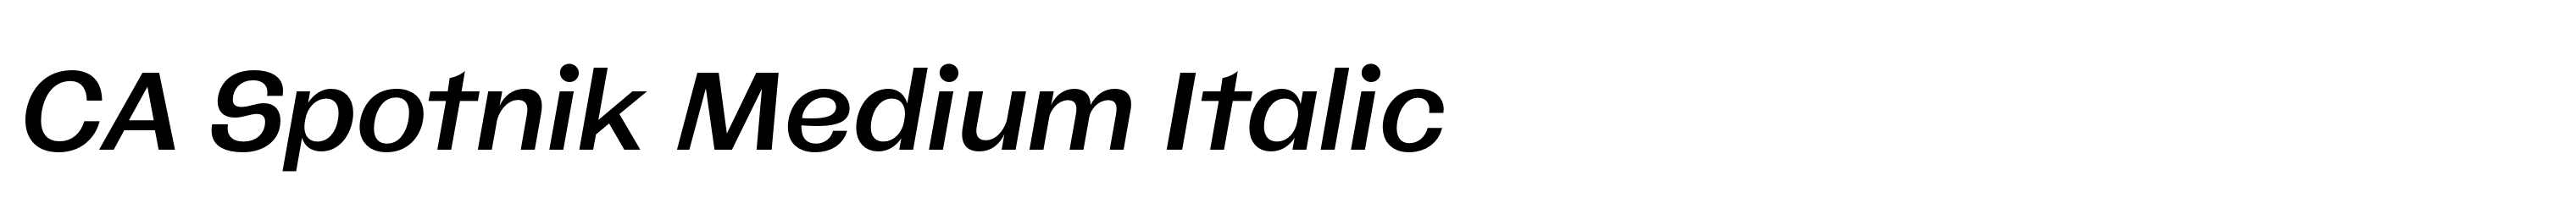 CA Spotnik Medium Italic